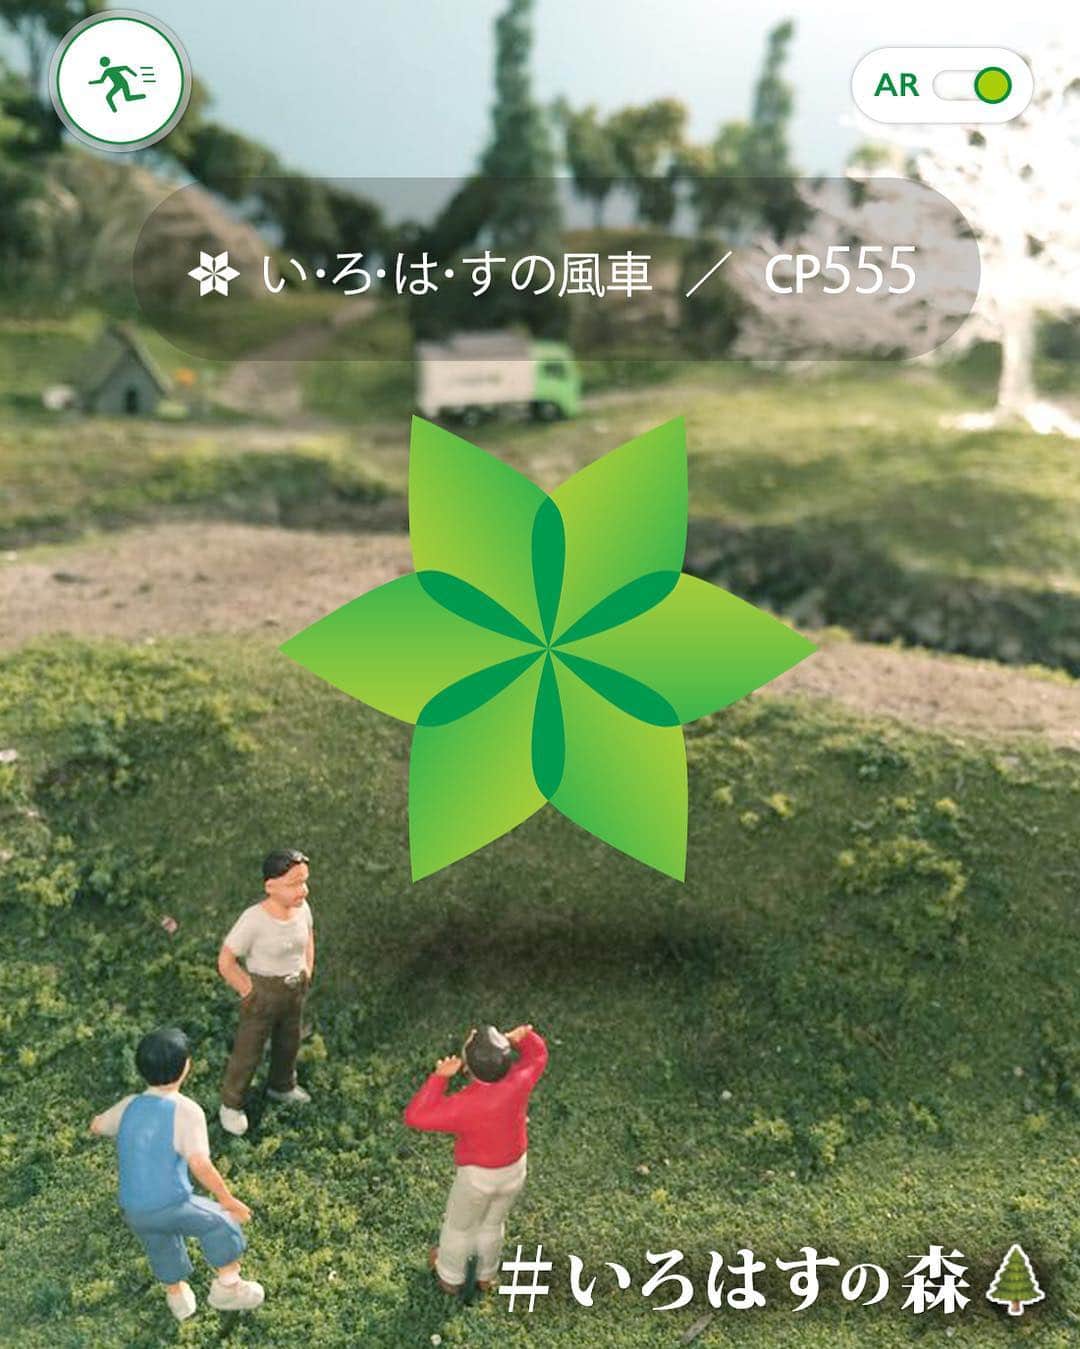 い･ろ･は･すのインスタグラム：「【 #いろはすの森 🌲通信】 い･ろ･は･すの森で、風車を発見!? . WEBにて「風車はどこにある?」キャンペーンを実施中！ まだの方はぜひ♪ http://www.i-lohas.jp/forest/explore/ ※@ilohas_jp アカウントトップのURLからもアクセスできます。」